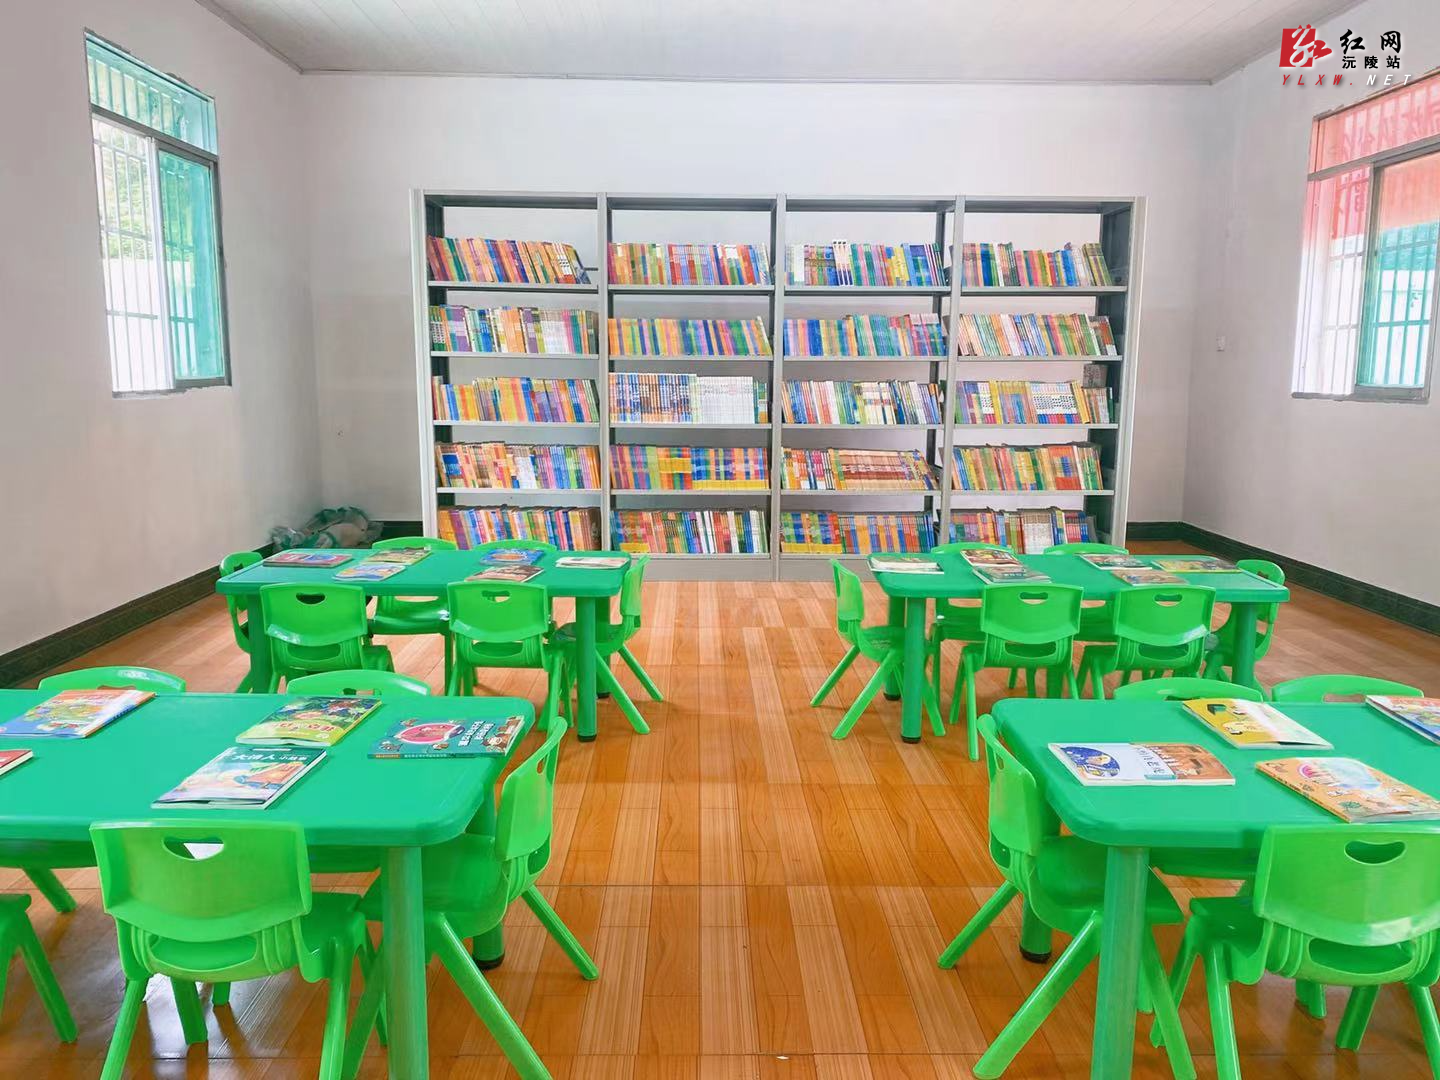 新华书店怀化分公司为竹园九校张其坳希望小学捐赠图书